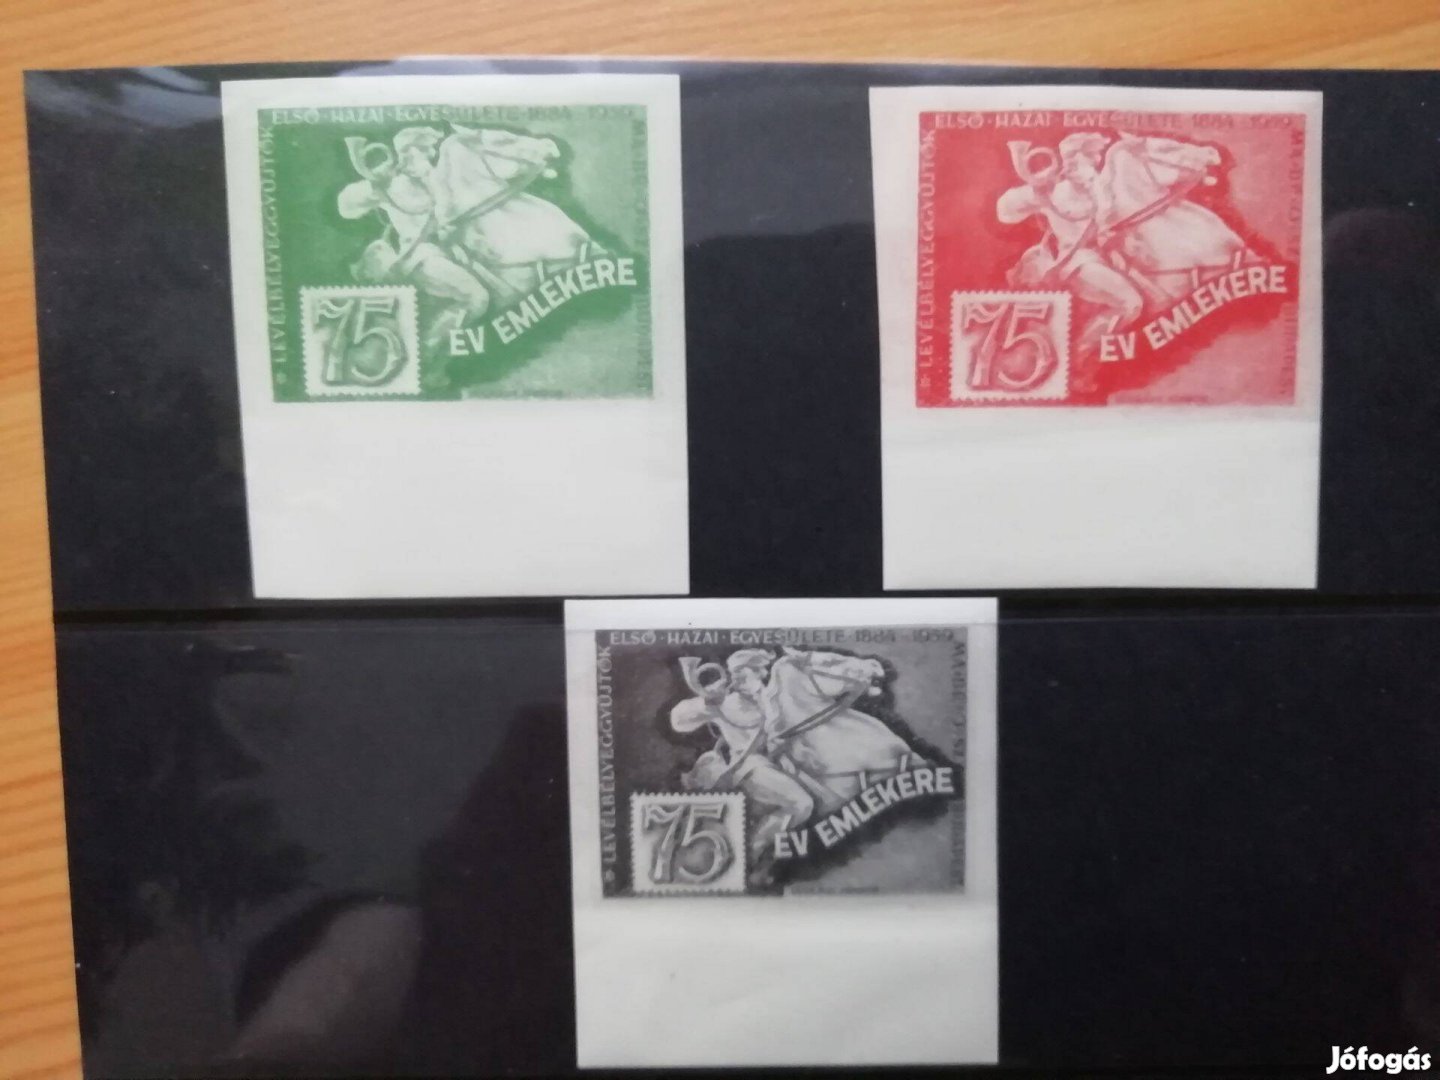 75 éves az első Magyar bélyeg gyűltő egyesület 1884-1959